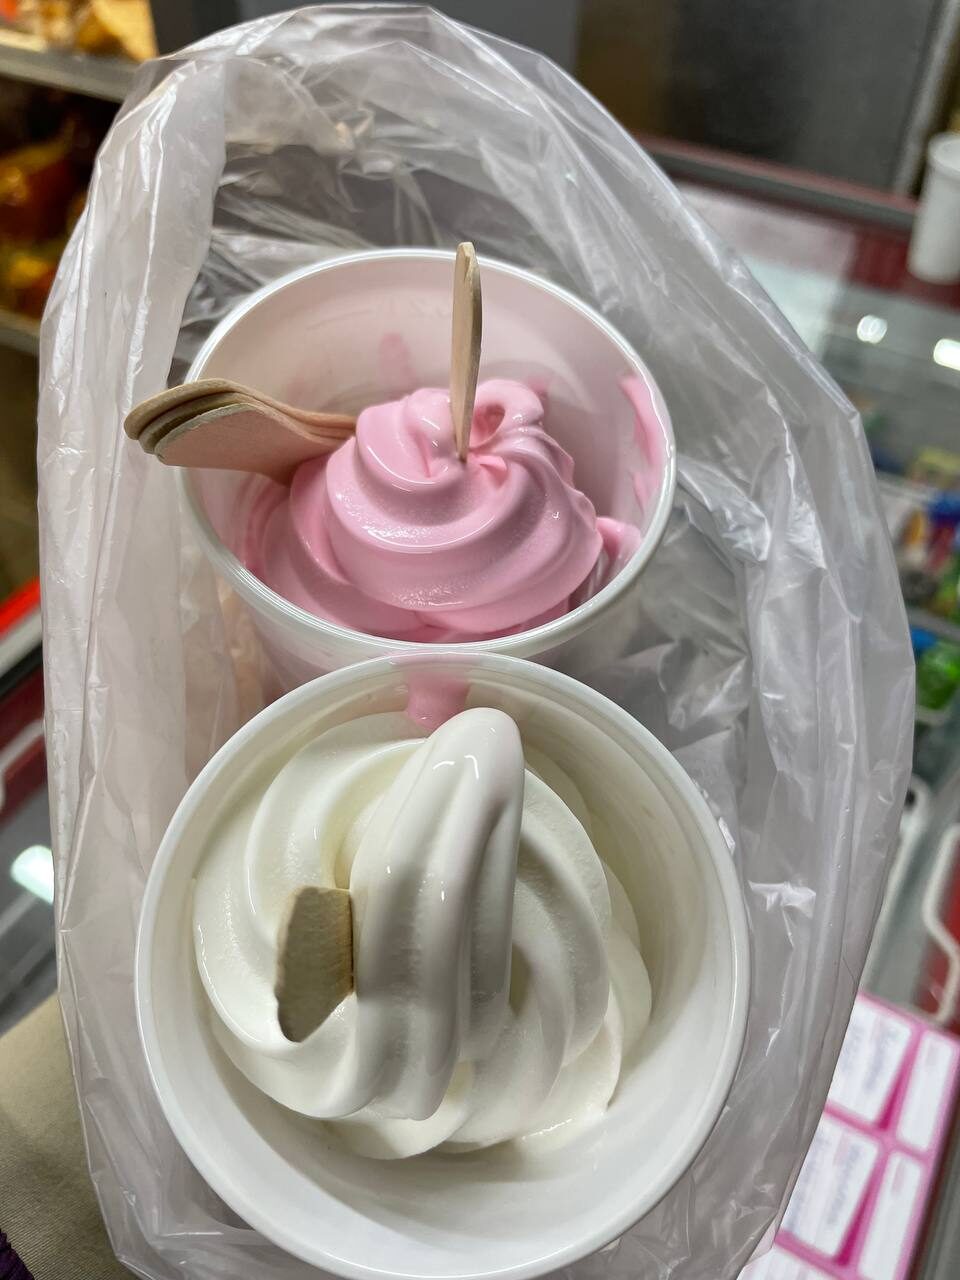 Производство мягкого мороженого запустили в Амгинском районе Якутии